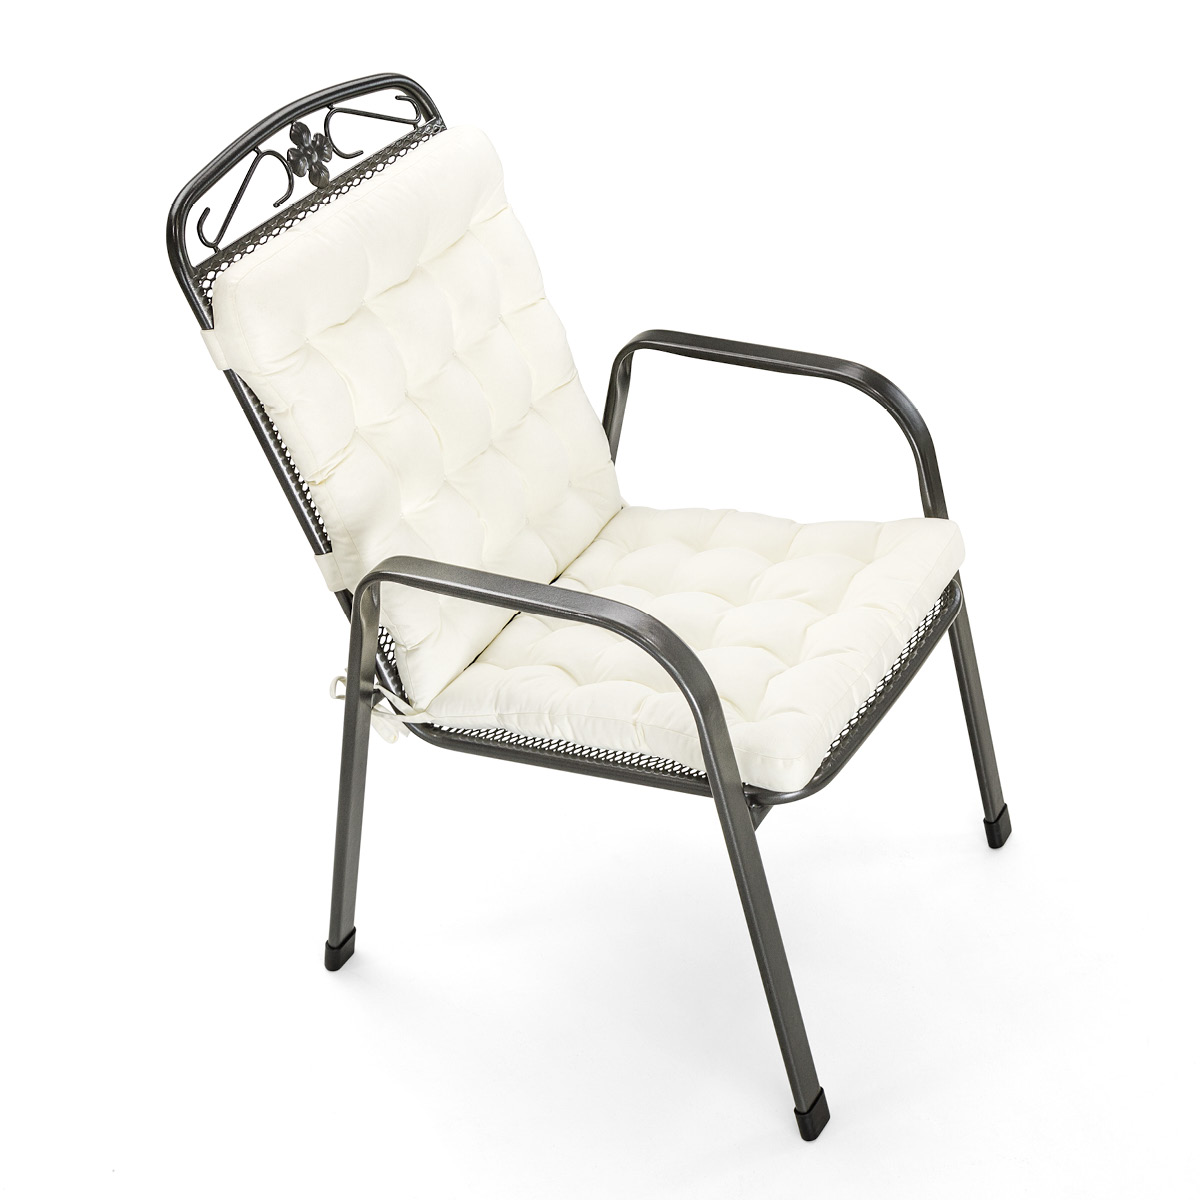 Sitzkissen mit Rückenlehne Weiß | dicke Polsterung mit Schleifen und Bänder zur Befestigung an Gartenstuhl / Stapelstuhl | HAVE A SEAT Living 